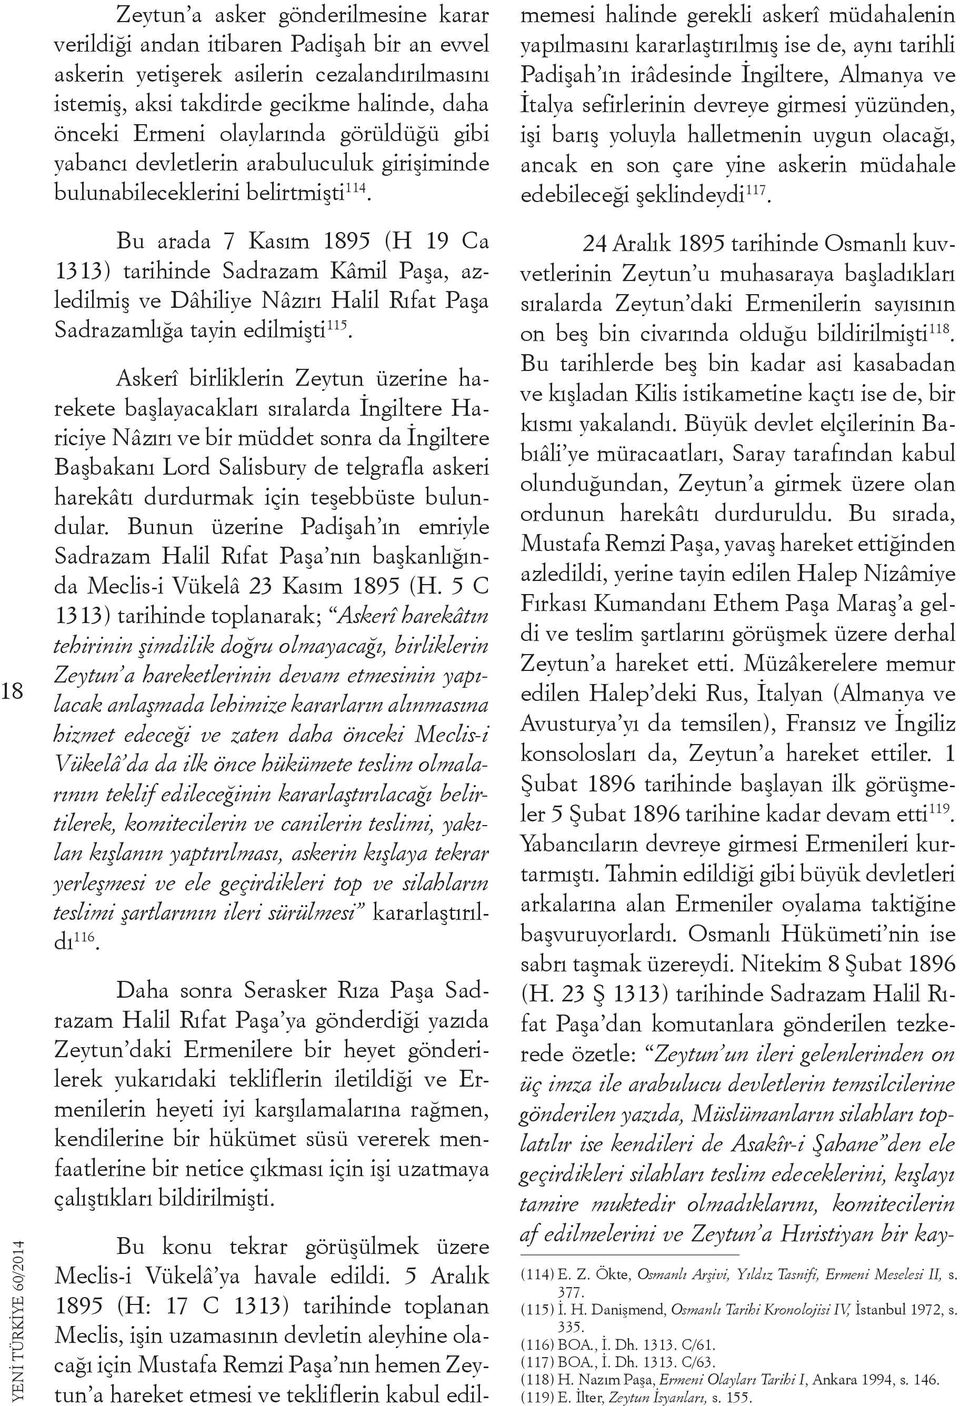 5 Aralık 1895 (H: 17 C 1313) tarihinde toplanan Meclis, işin uzamasının devletin aleyhine olacağı için Mustafa Remzi Paşa nın hemen Zeytun a hareket etmesi ve tekliflerin kabul edilmemesi halinde